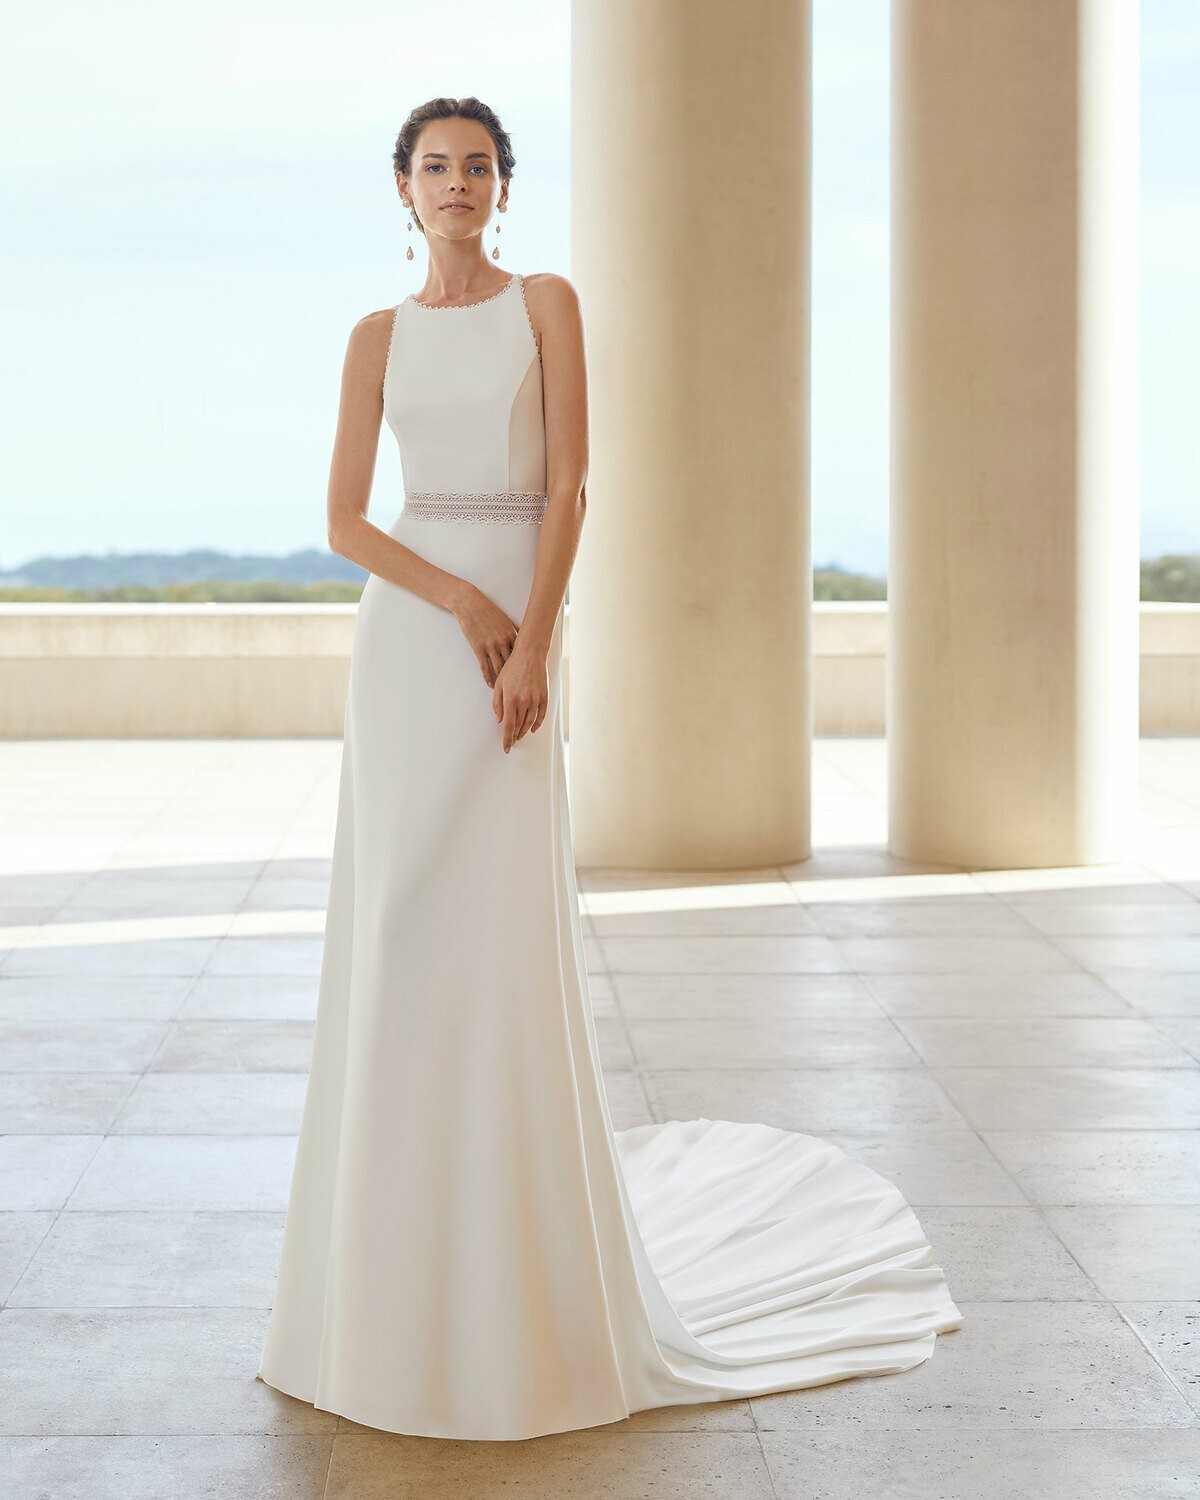 SAHARA - abito da sposa collezione 2020 - Rosa Clarà Couture